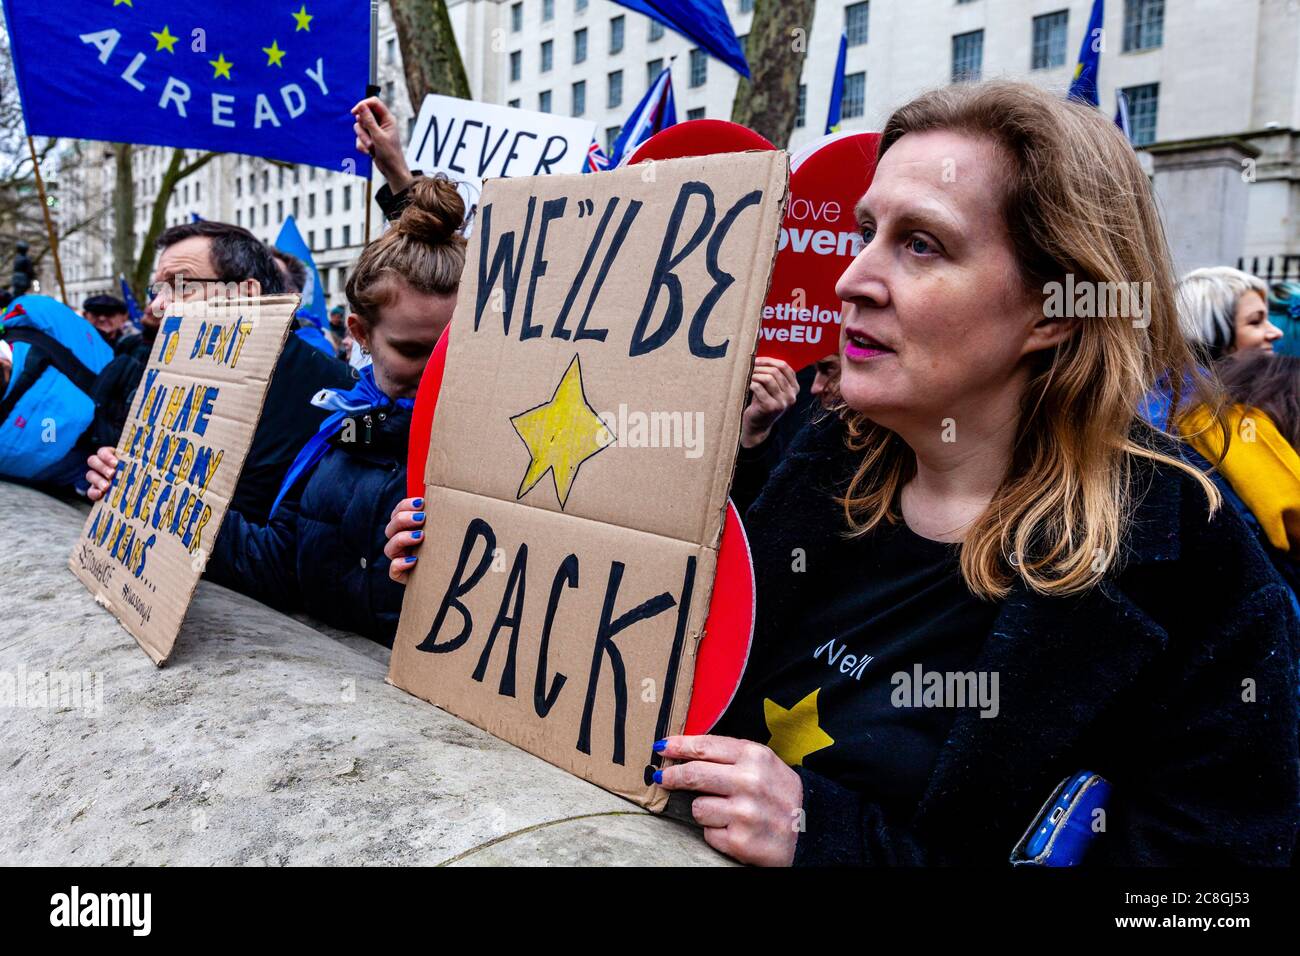 Les partisans pro de l'UE protestent près de la place du Parlement le jour où la Grande-Bretagne doit quitter officiellement l'UE, Whitehall, Londres, Royaume-Uni Banque D'Images